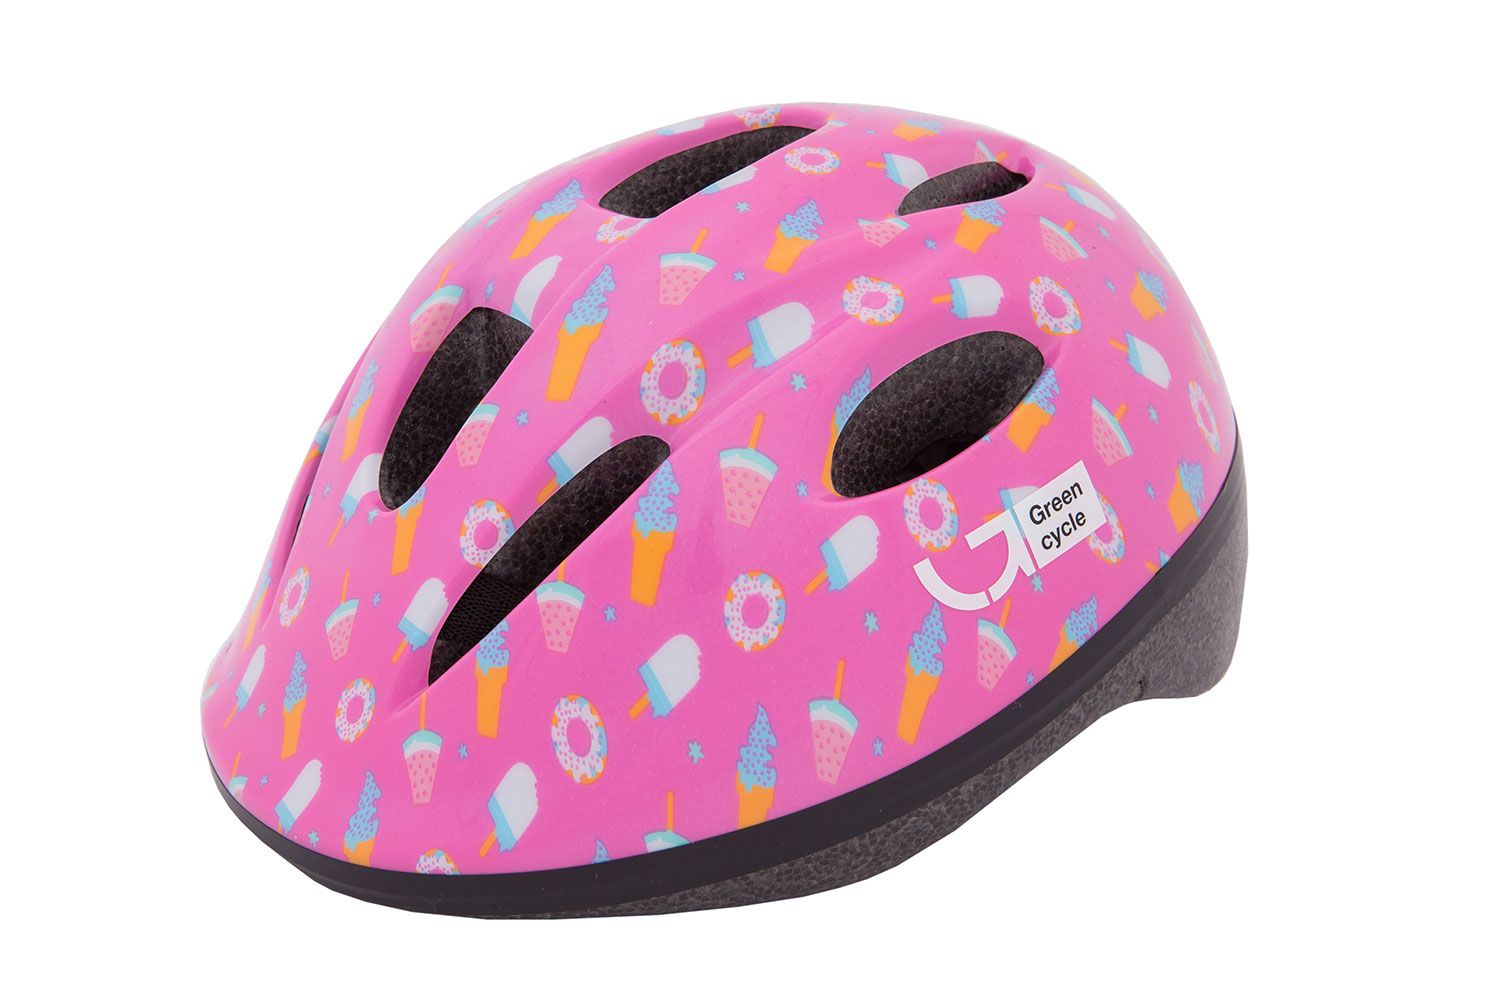 Шлем детский Green Cycle Sweet размер 48-52см малиновый/розовый лак фото 